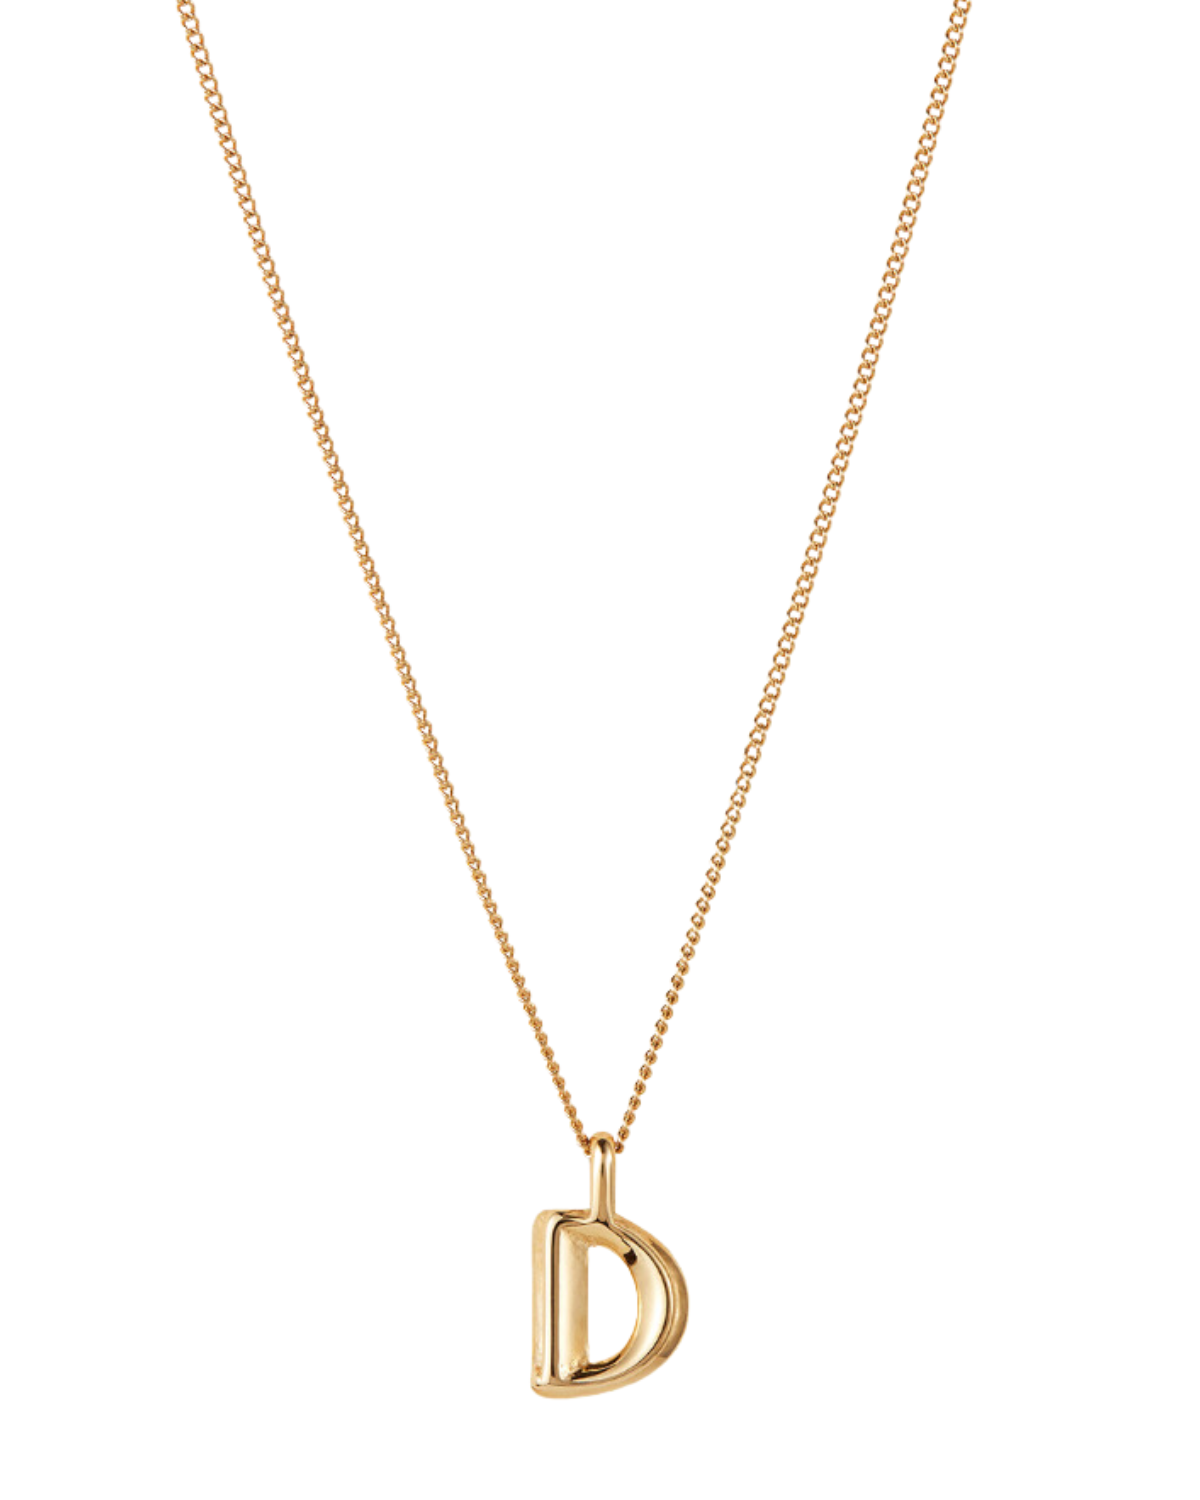 Monogram Necklace - D (Gold)